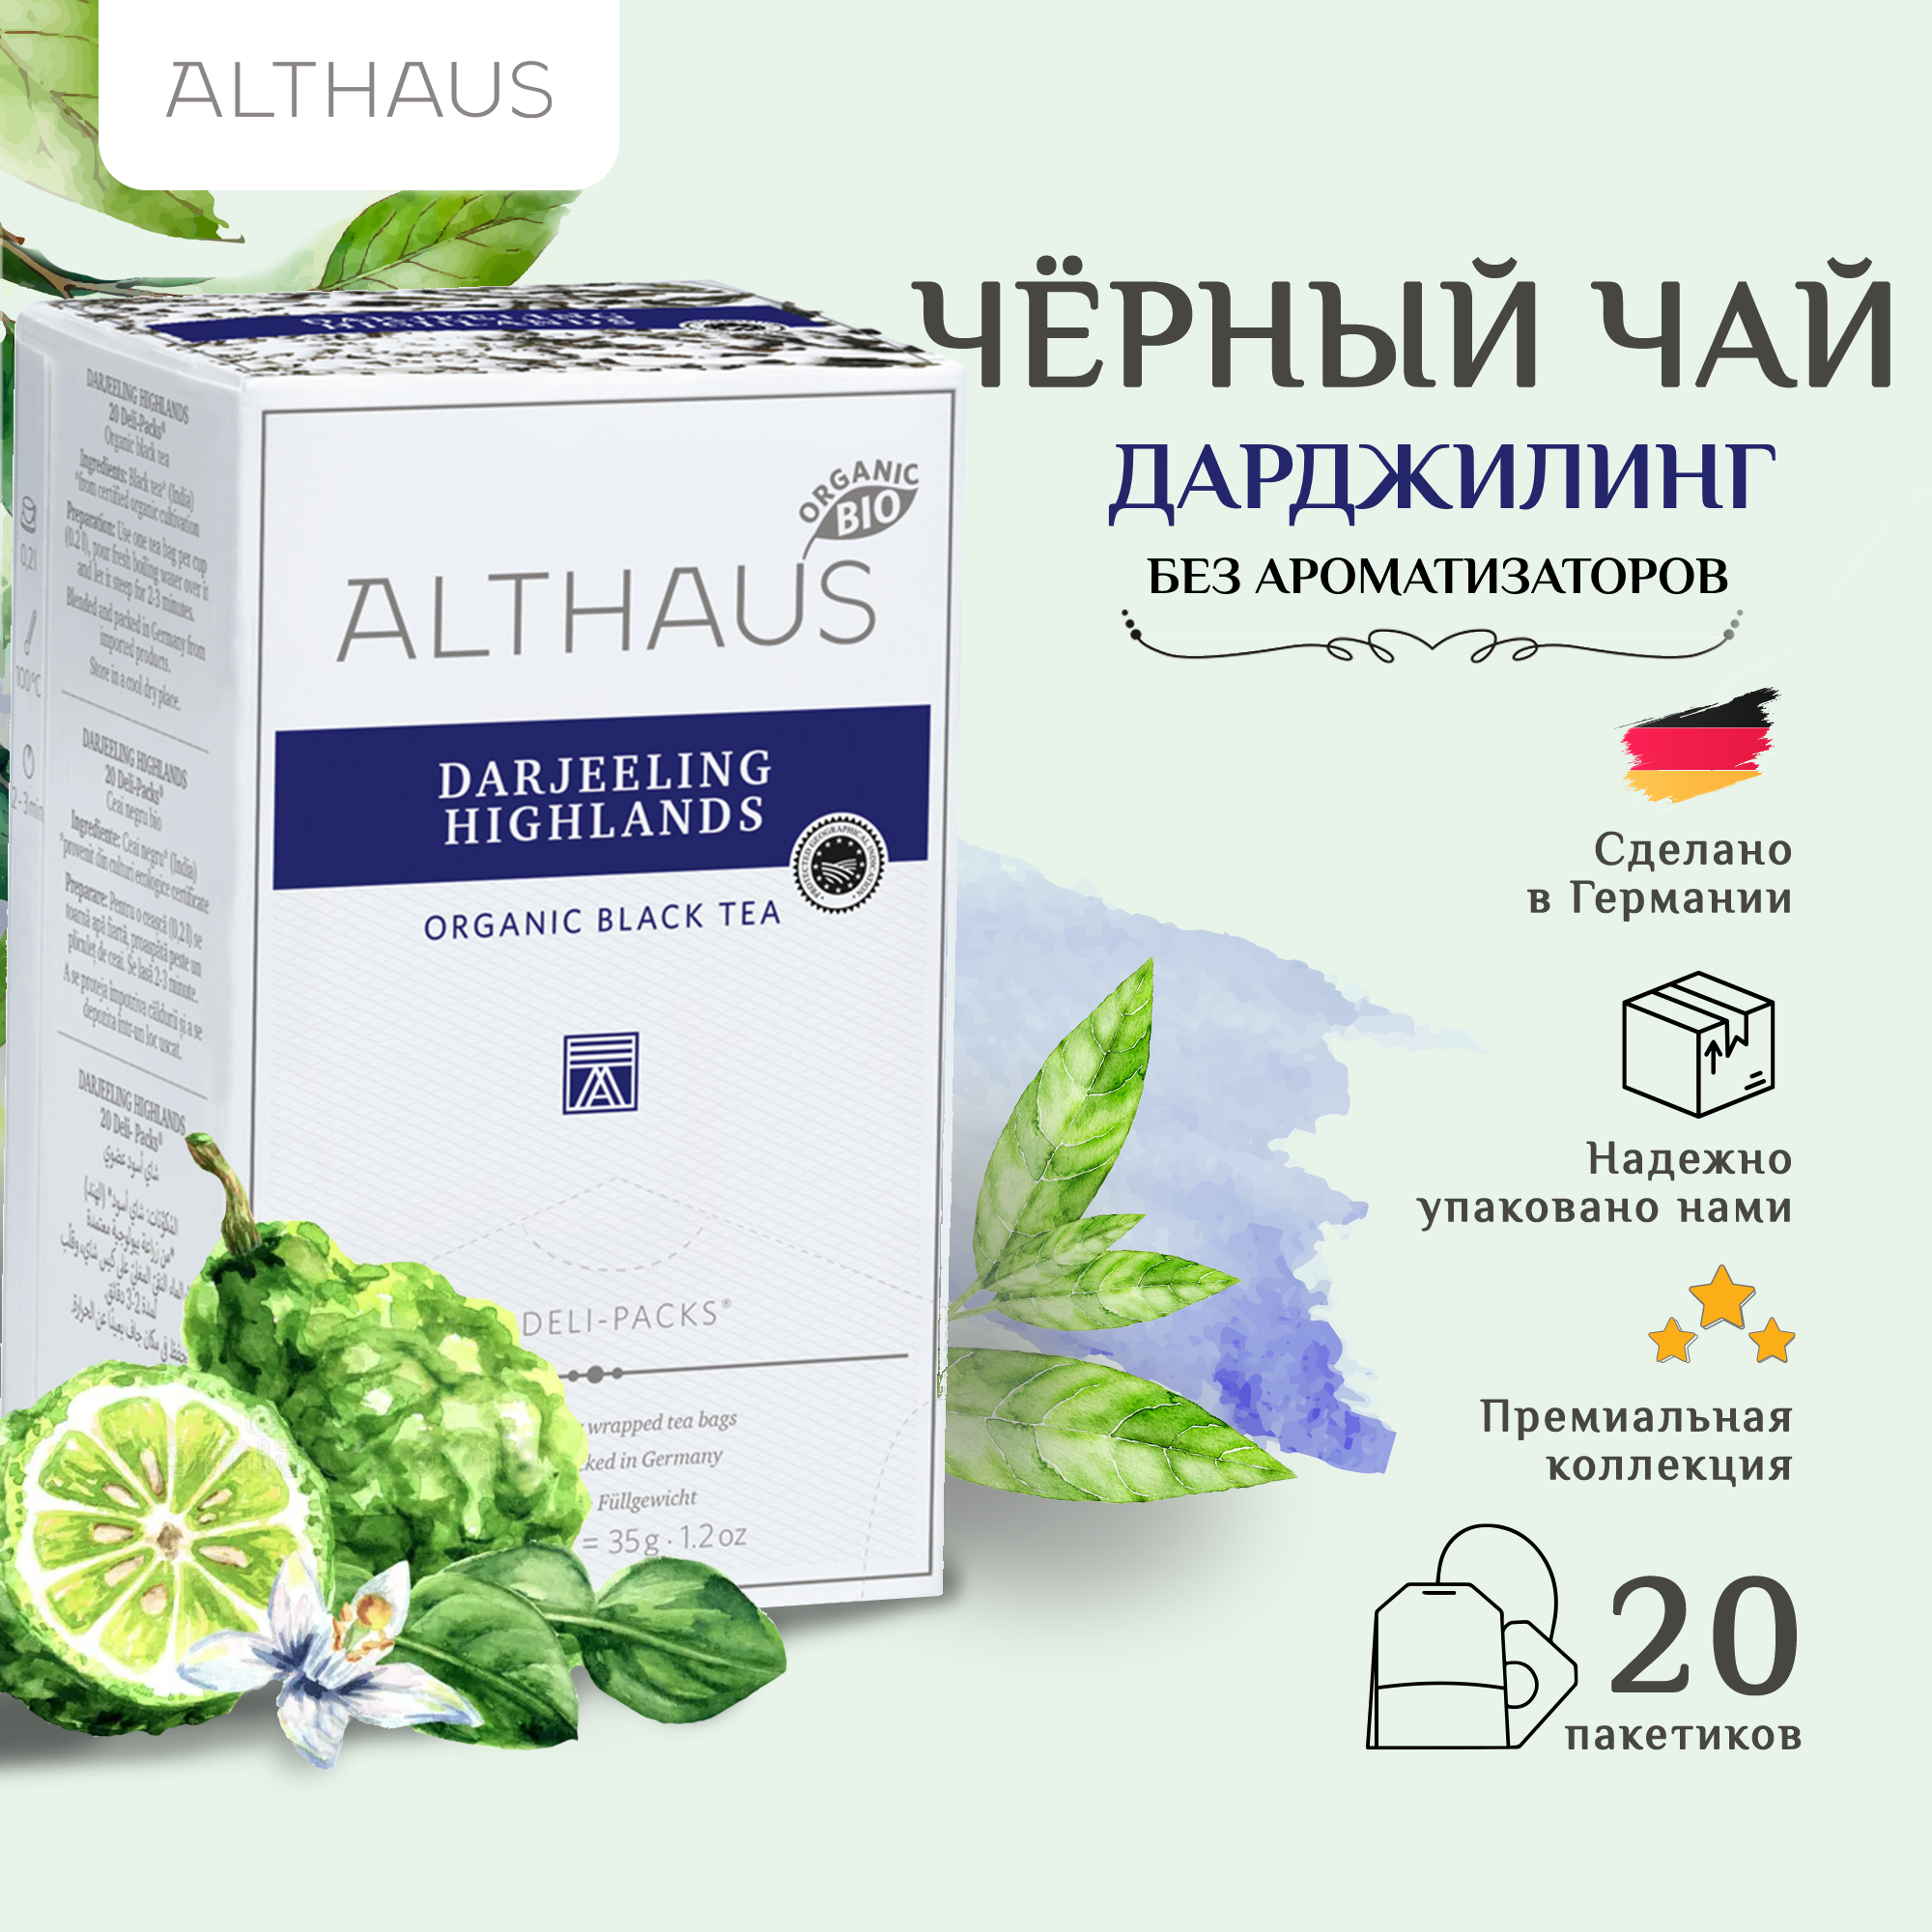 Althaus Darjeeling Highlands Organic, Высокогорья Дарджилинга чай в пакетиках, 20 шт